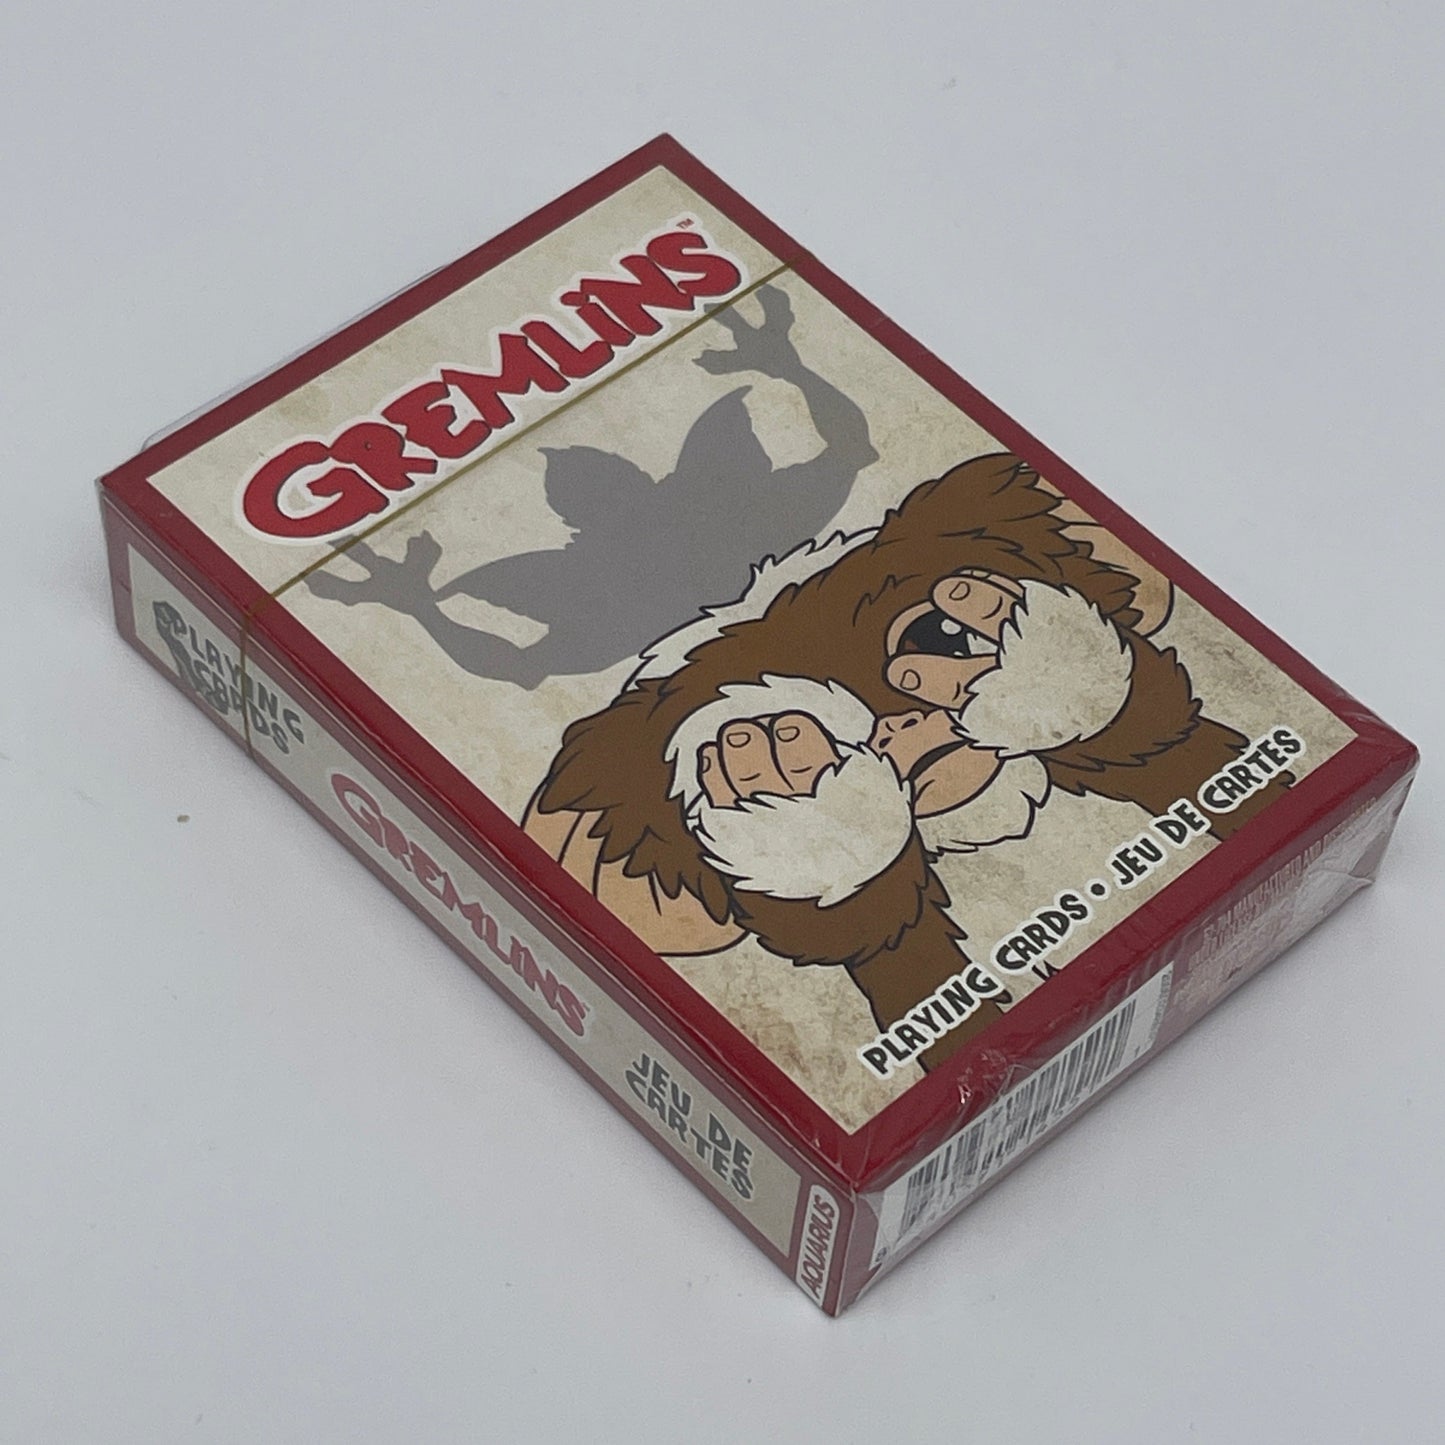 Warner Bros - GREMLINS - Kartenspiel Spielkarten Standarddeck 54 Karten